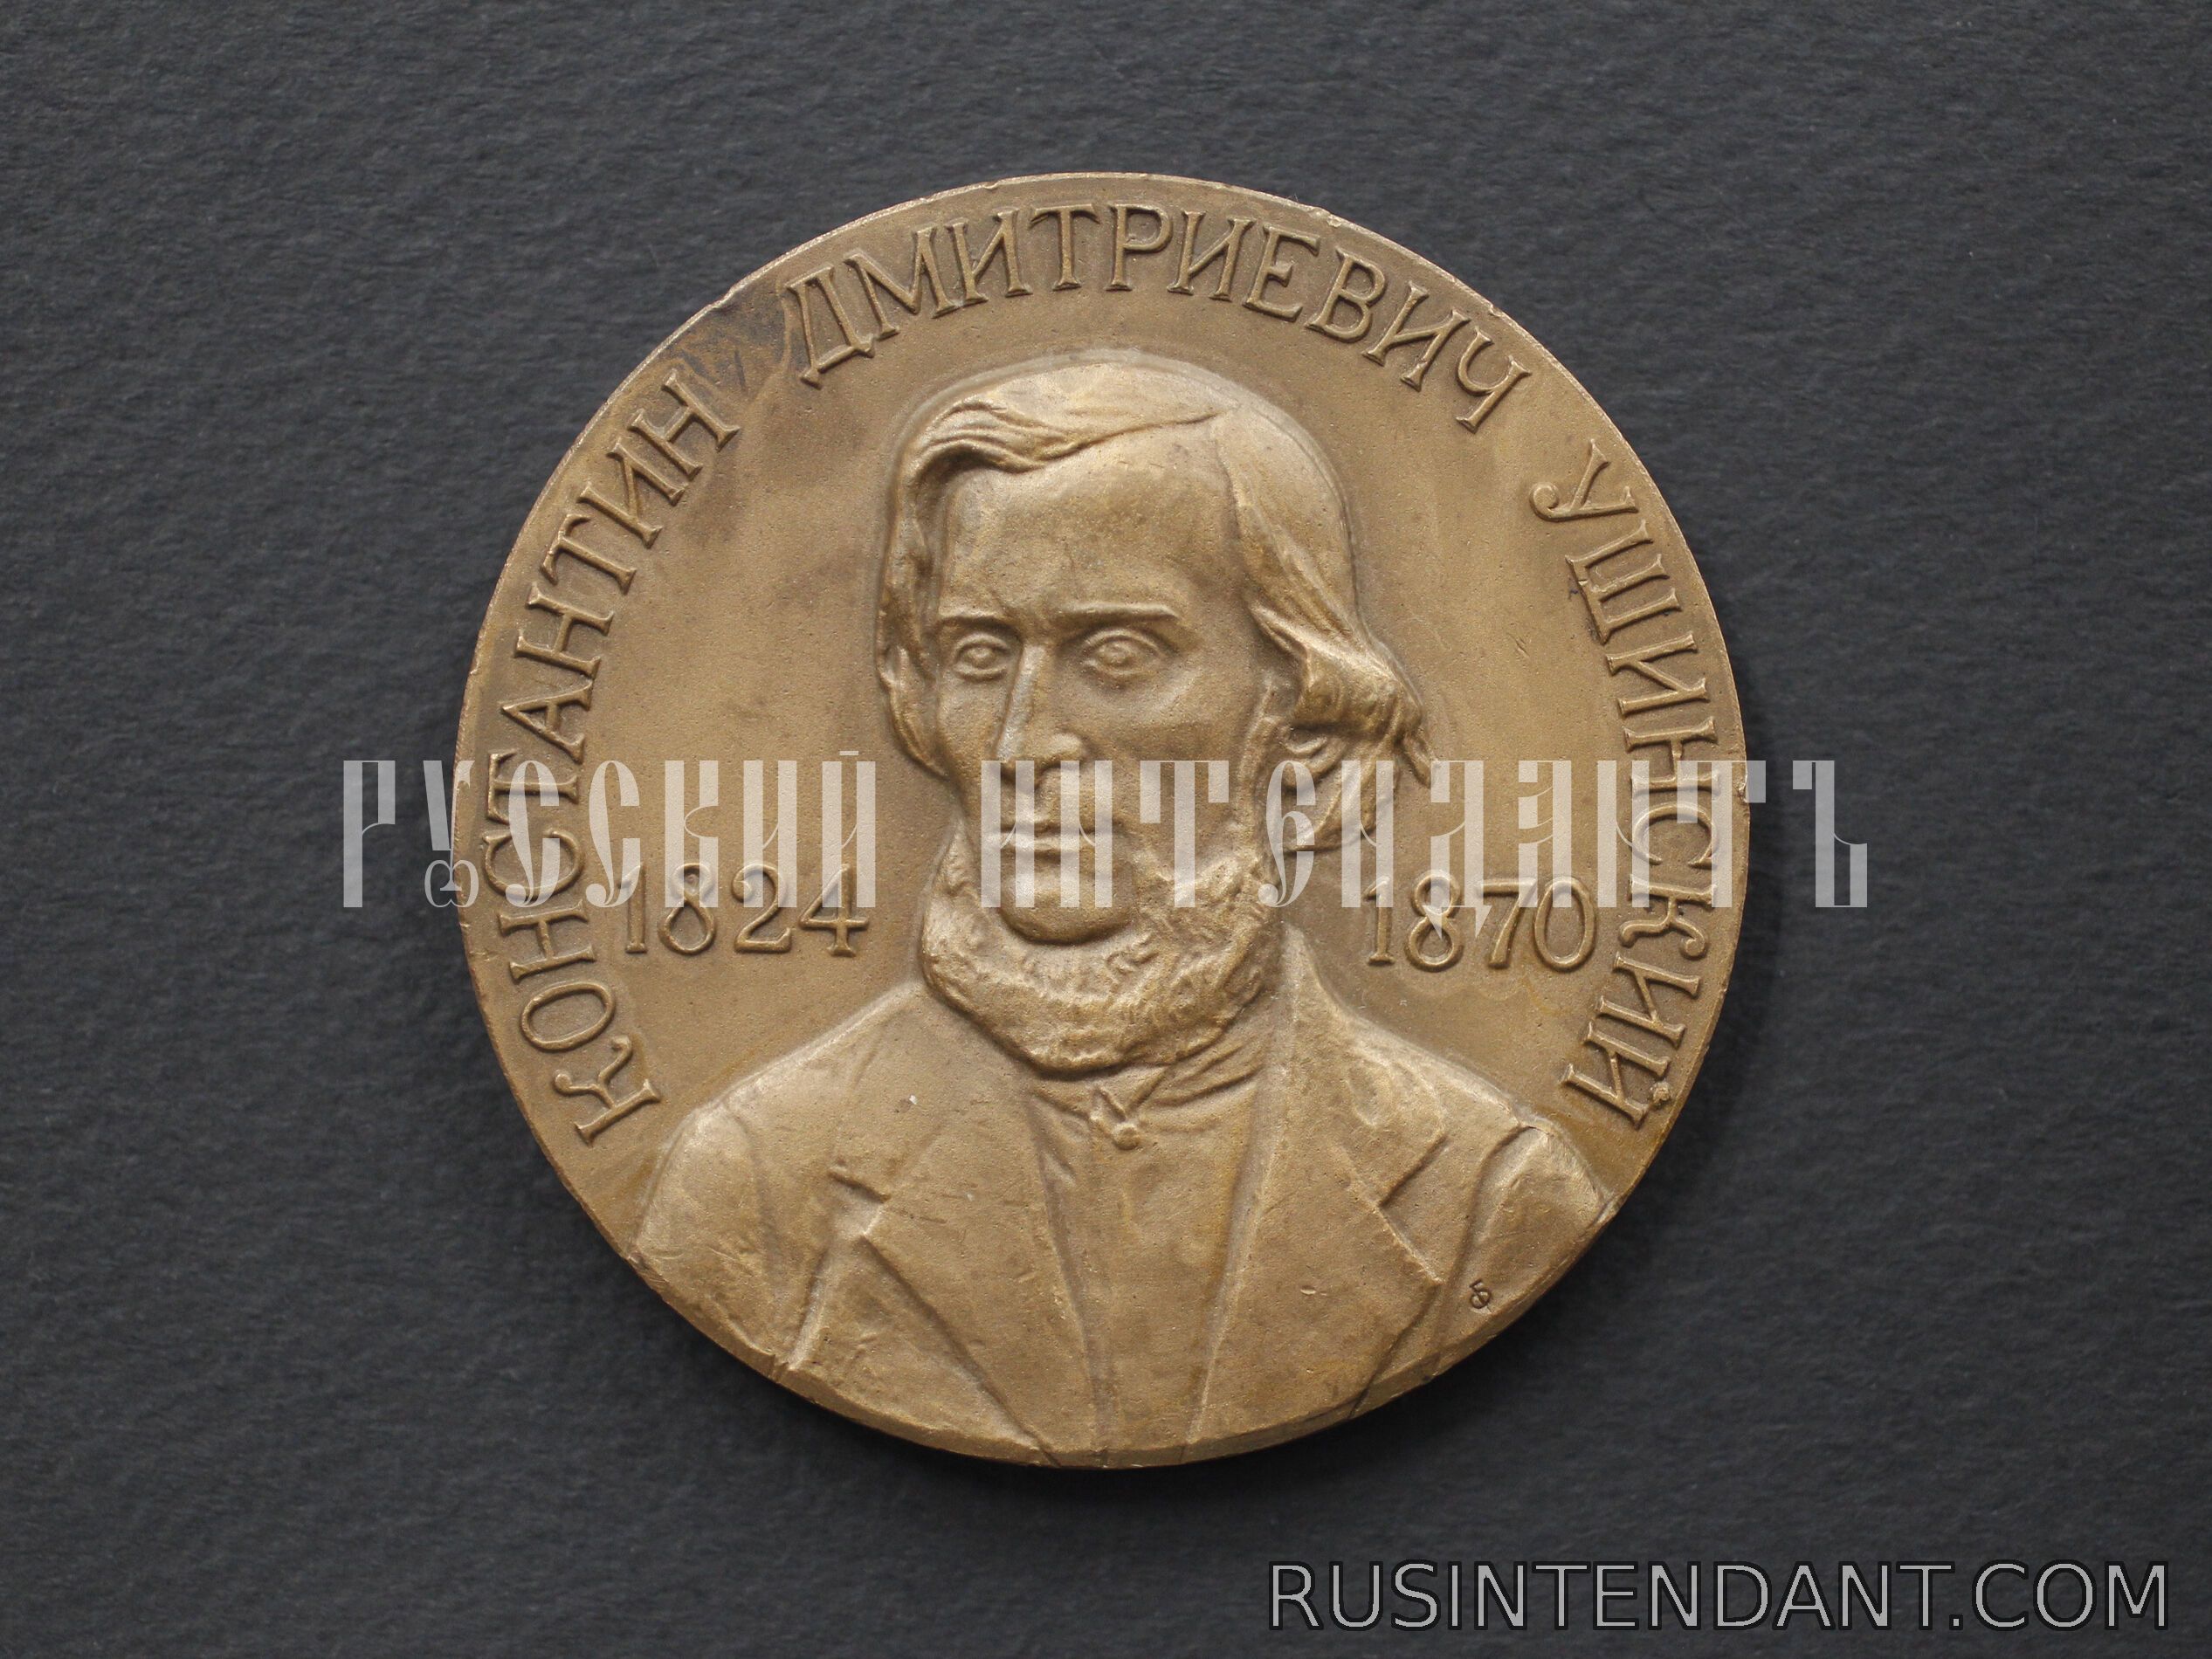 Фото 1: Настольная медаль «Константин Дмитриевич Ушинский 1824-1870» 